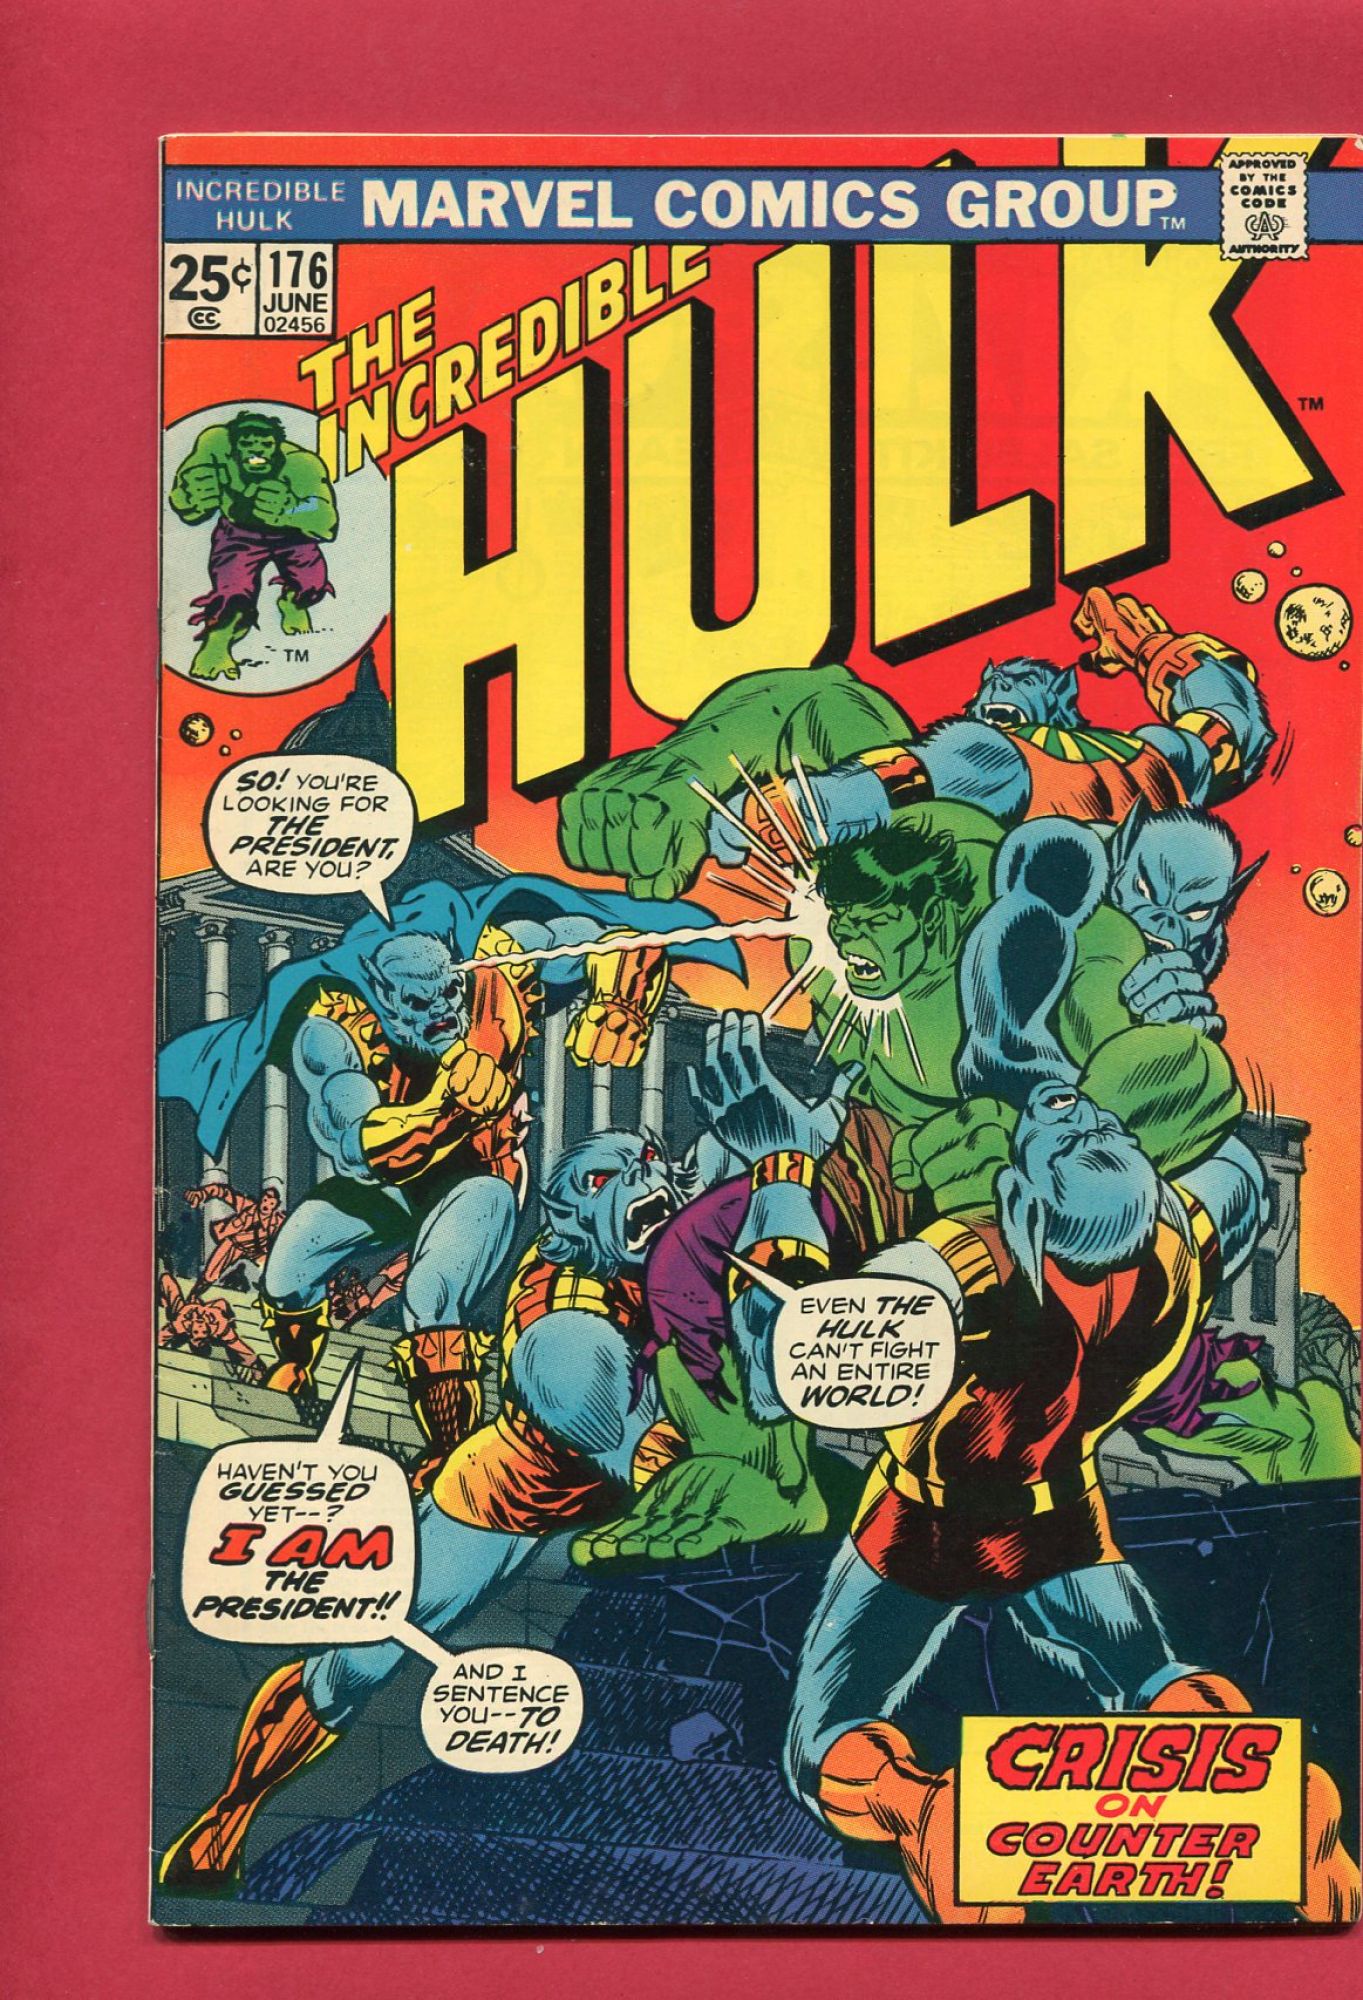 Incredible Hulk #176, Jun 1974, 7.0 FN/VF